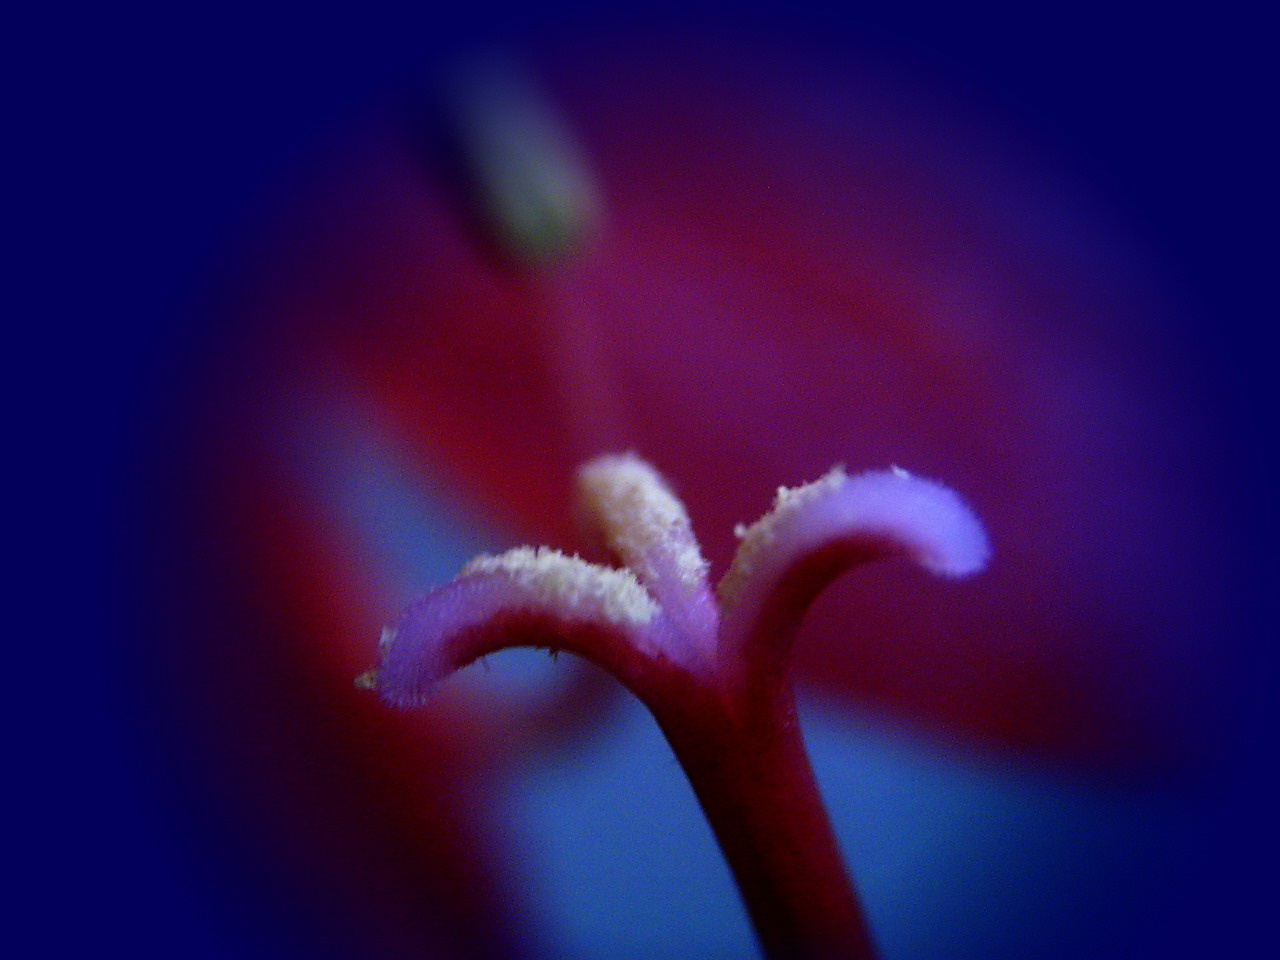 amaryllis, virágporosan